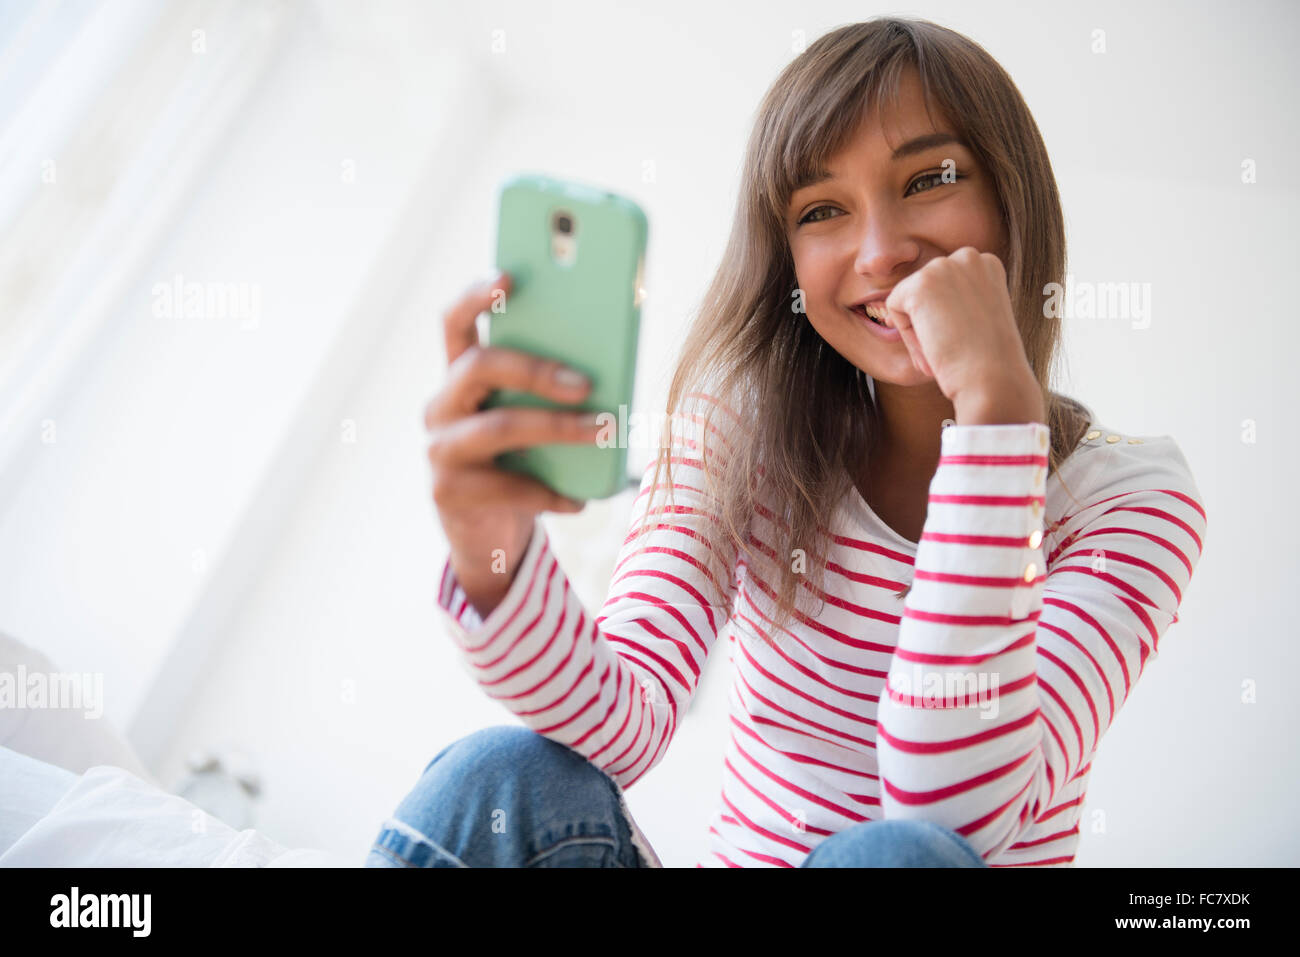 Razza mista donna prendendo selfie con un telefono cellulare Foto Stock